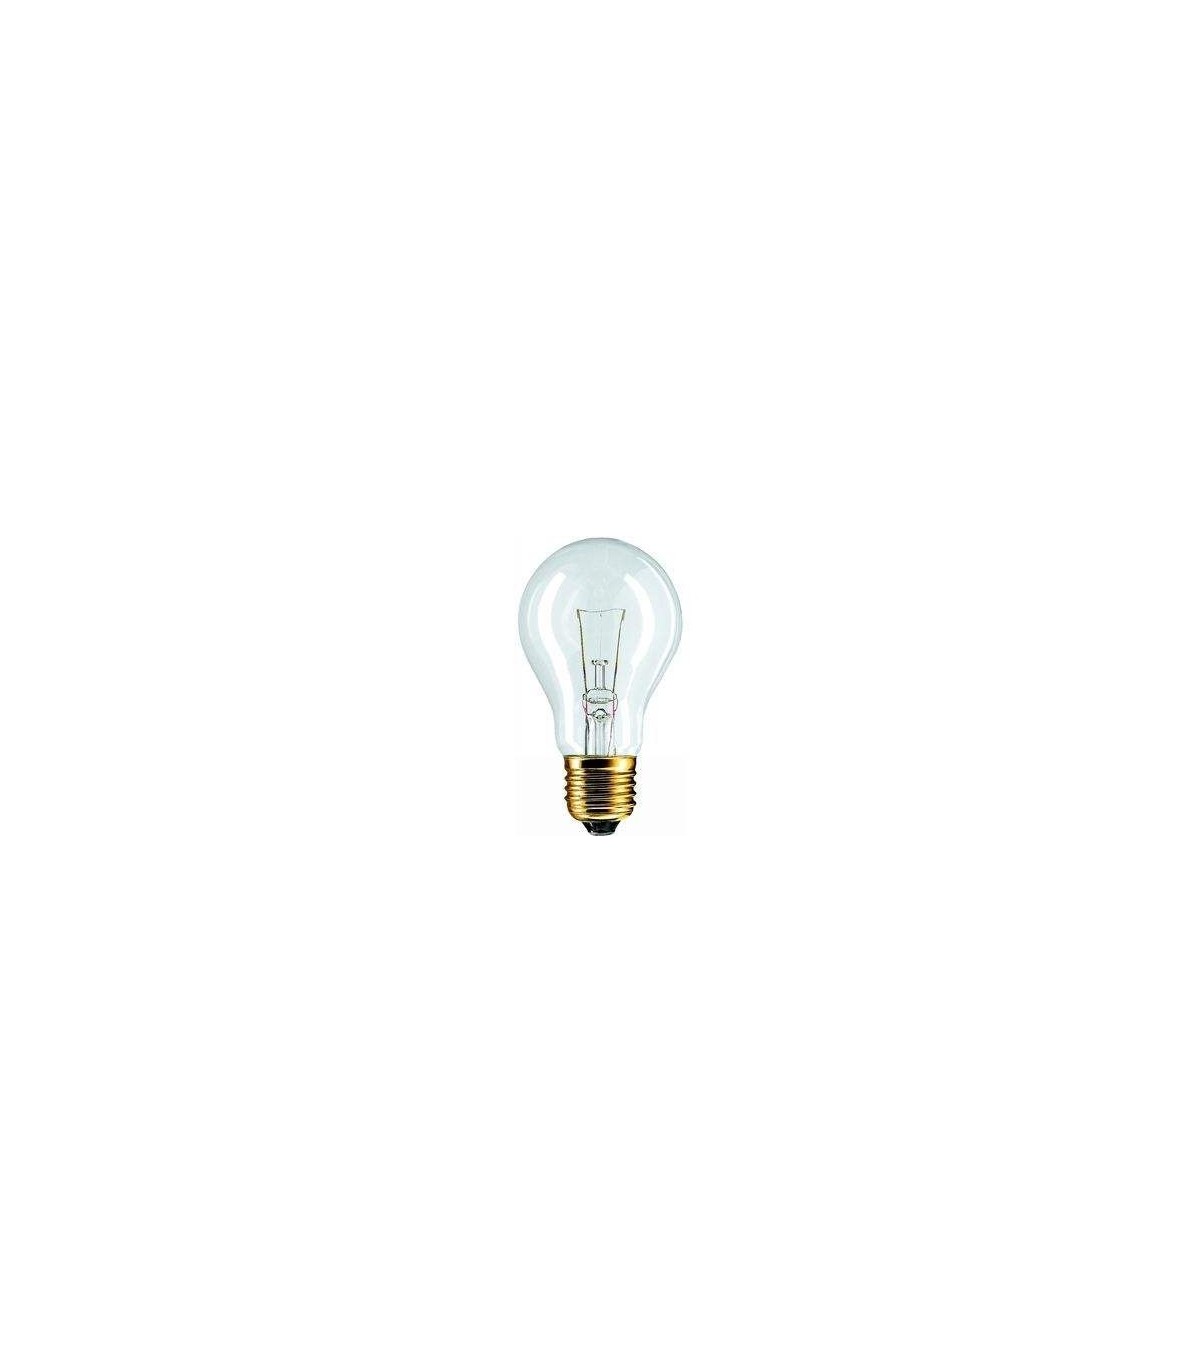 Ampoules à incandescence, verre clair ou dépolie de 15W à 300W E14